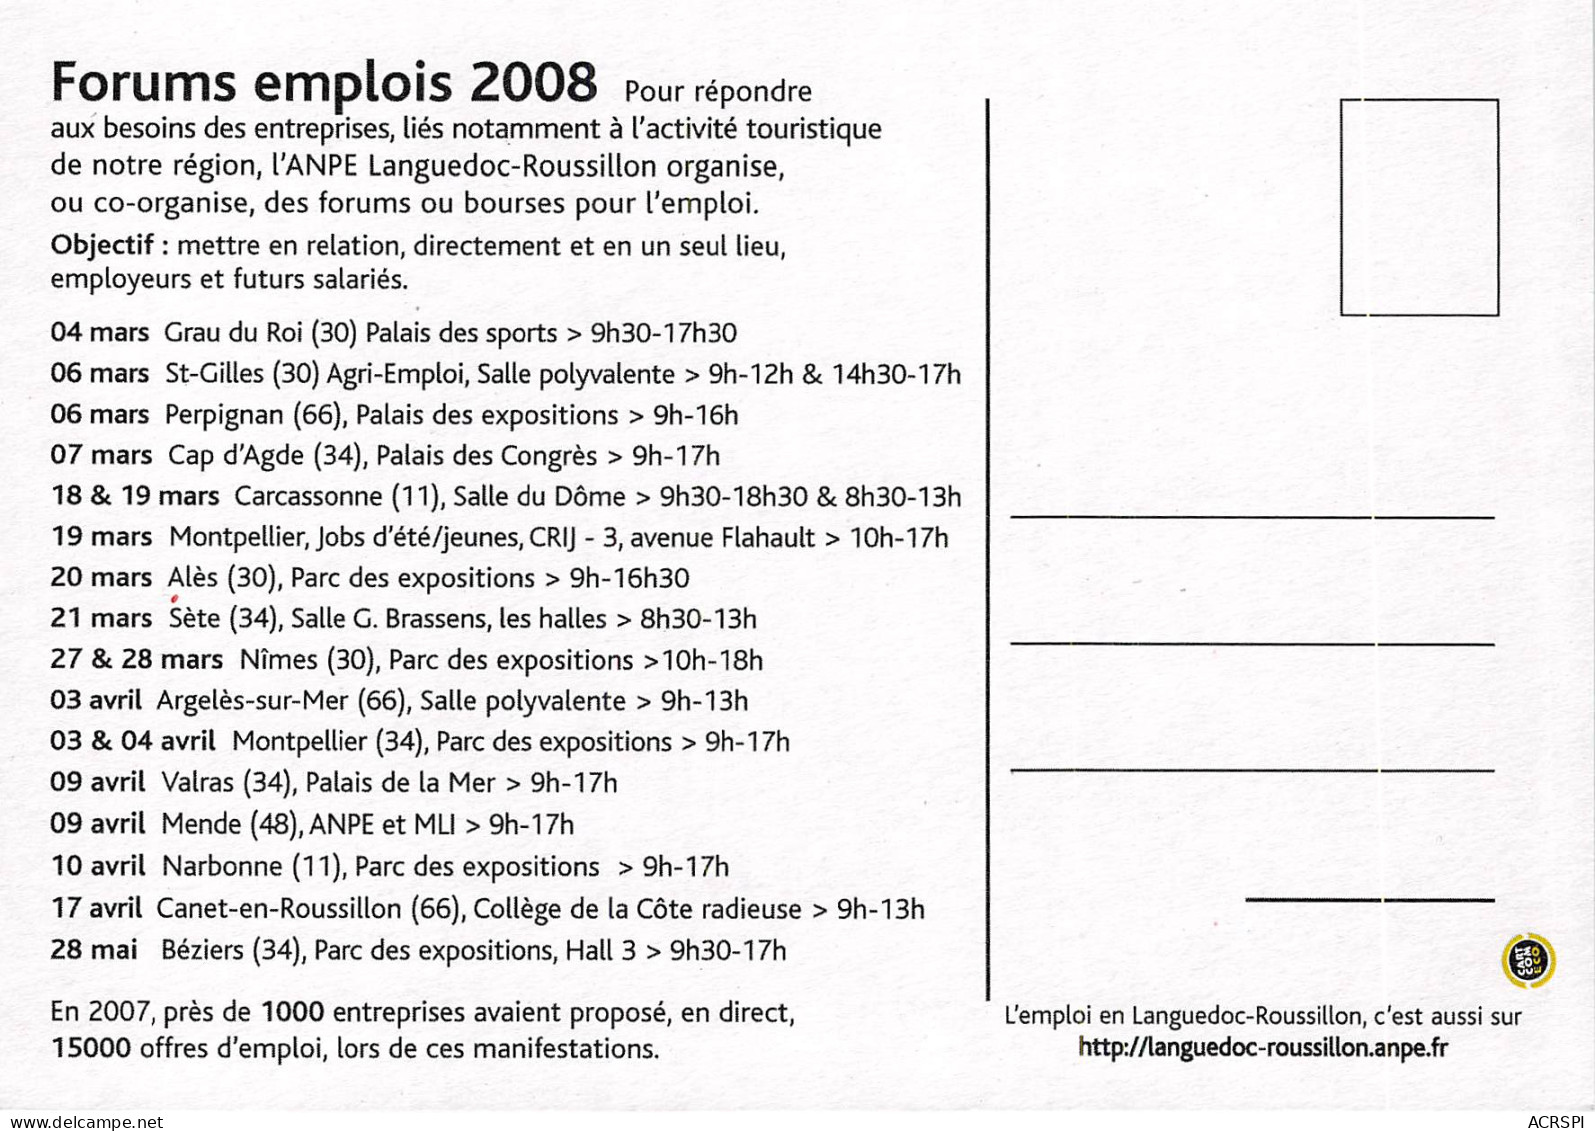 Printemps De L Emploi Bourses Aux Emplois Anpe Languedoc Roussillon 7(scan Recto-verso) MB2322 - Advertising